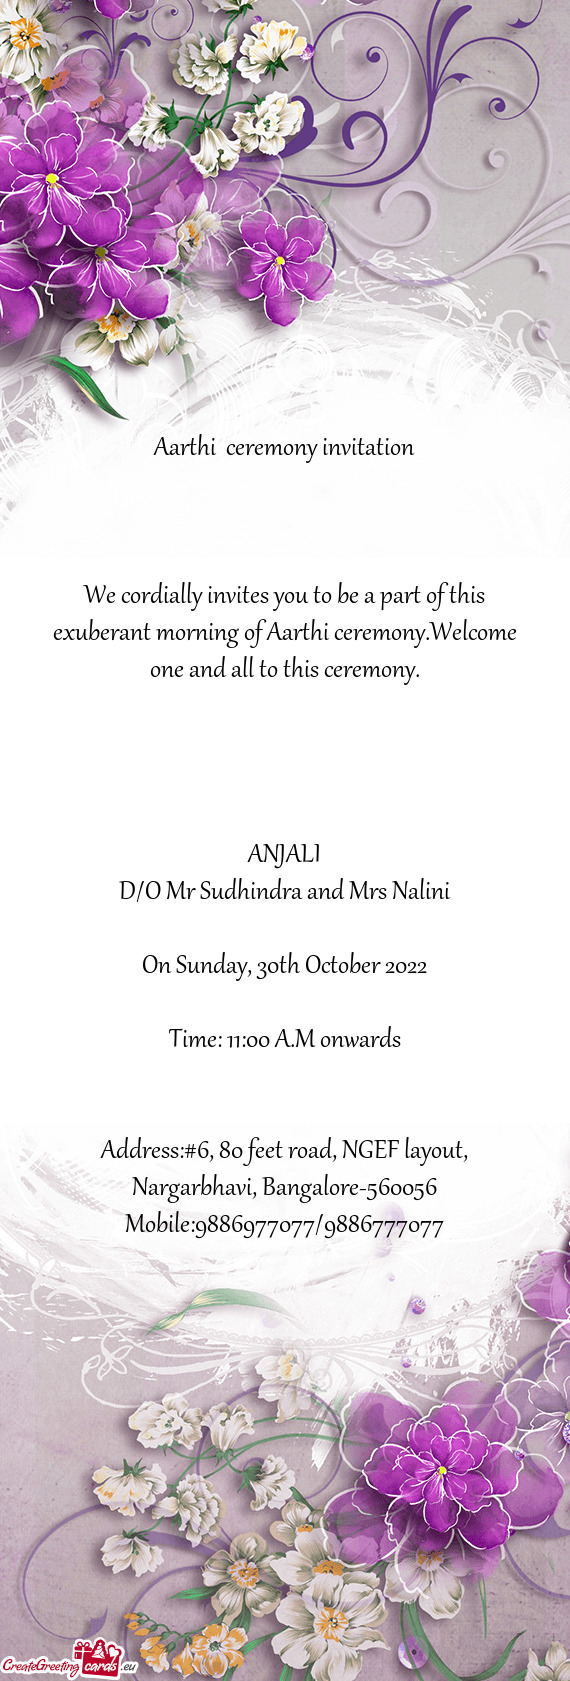 Aarthi ceremony invitation